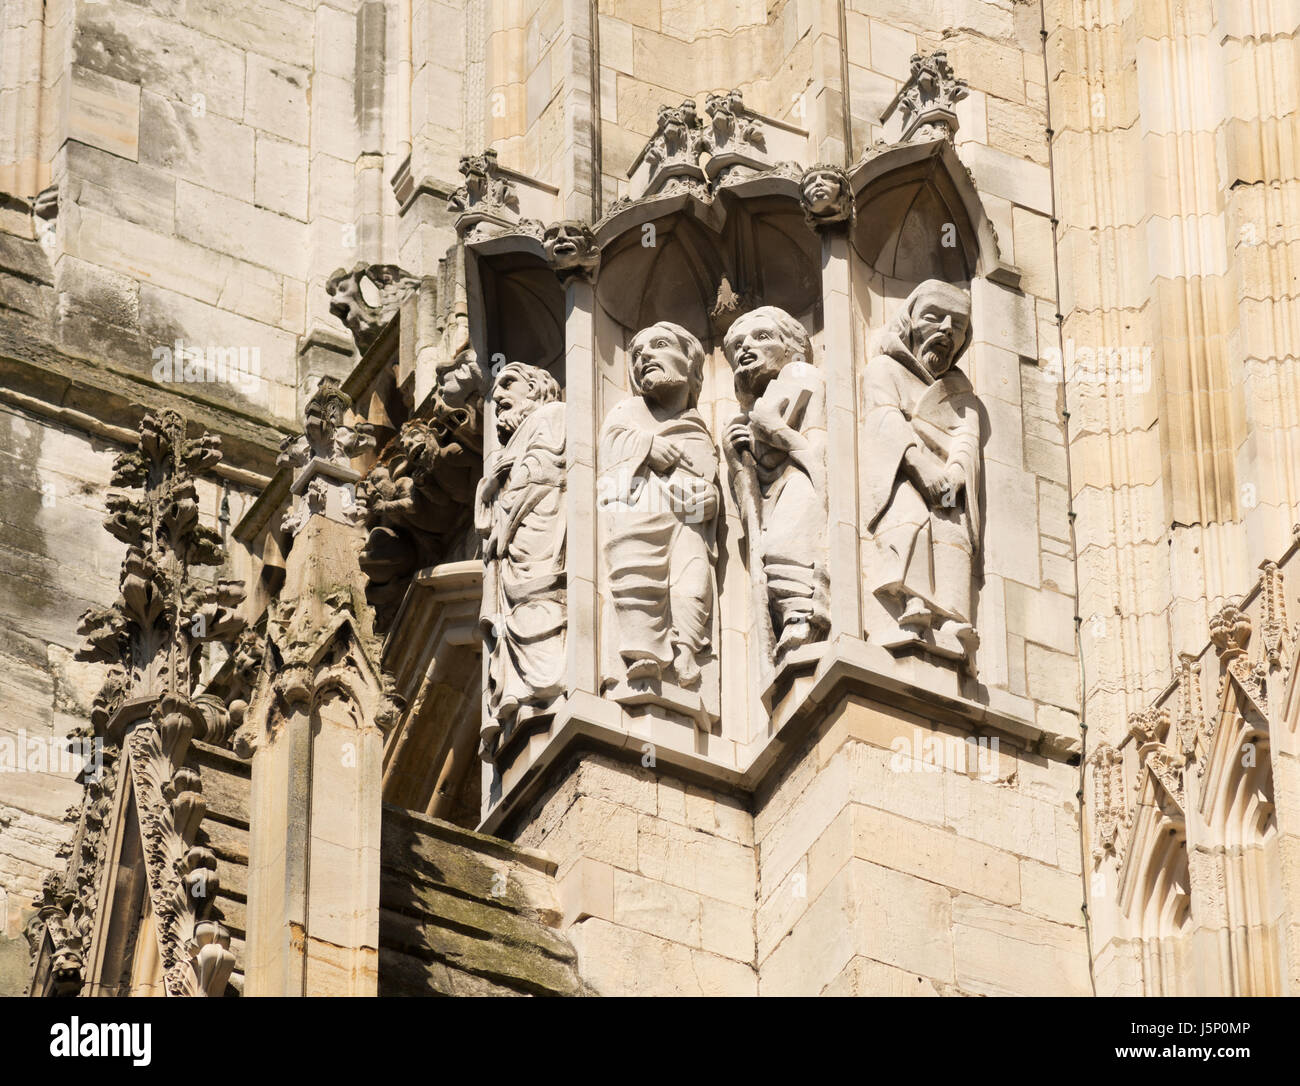 La statuaria religiosa sulla facciata ovest della cattedrale di York Minster e York, North Yorkshire, Inghilterra, Regno Unito Foto Stock